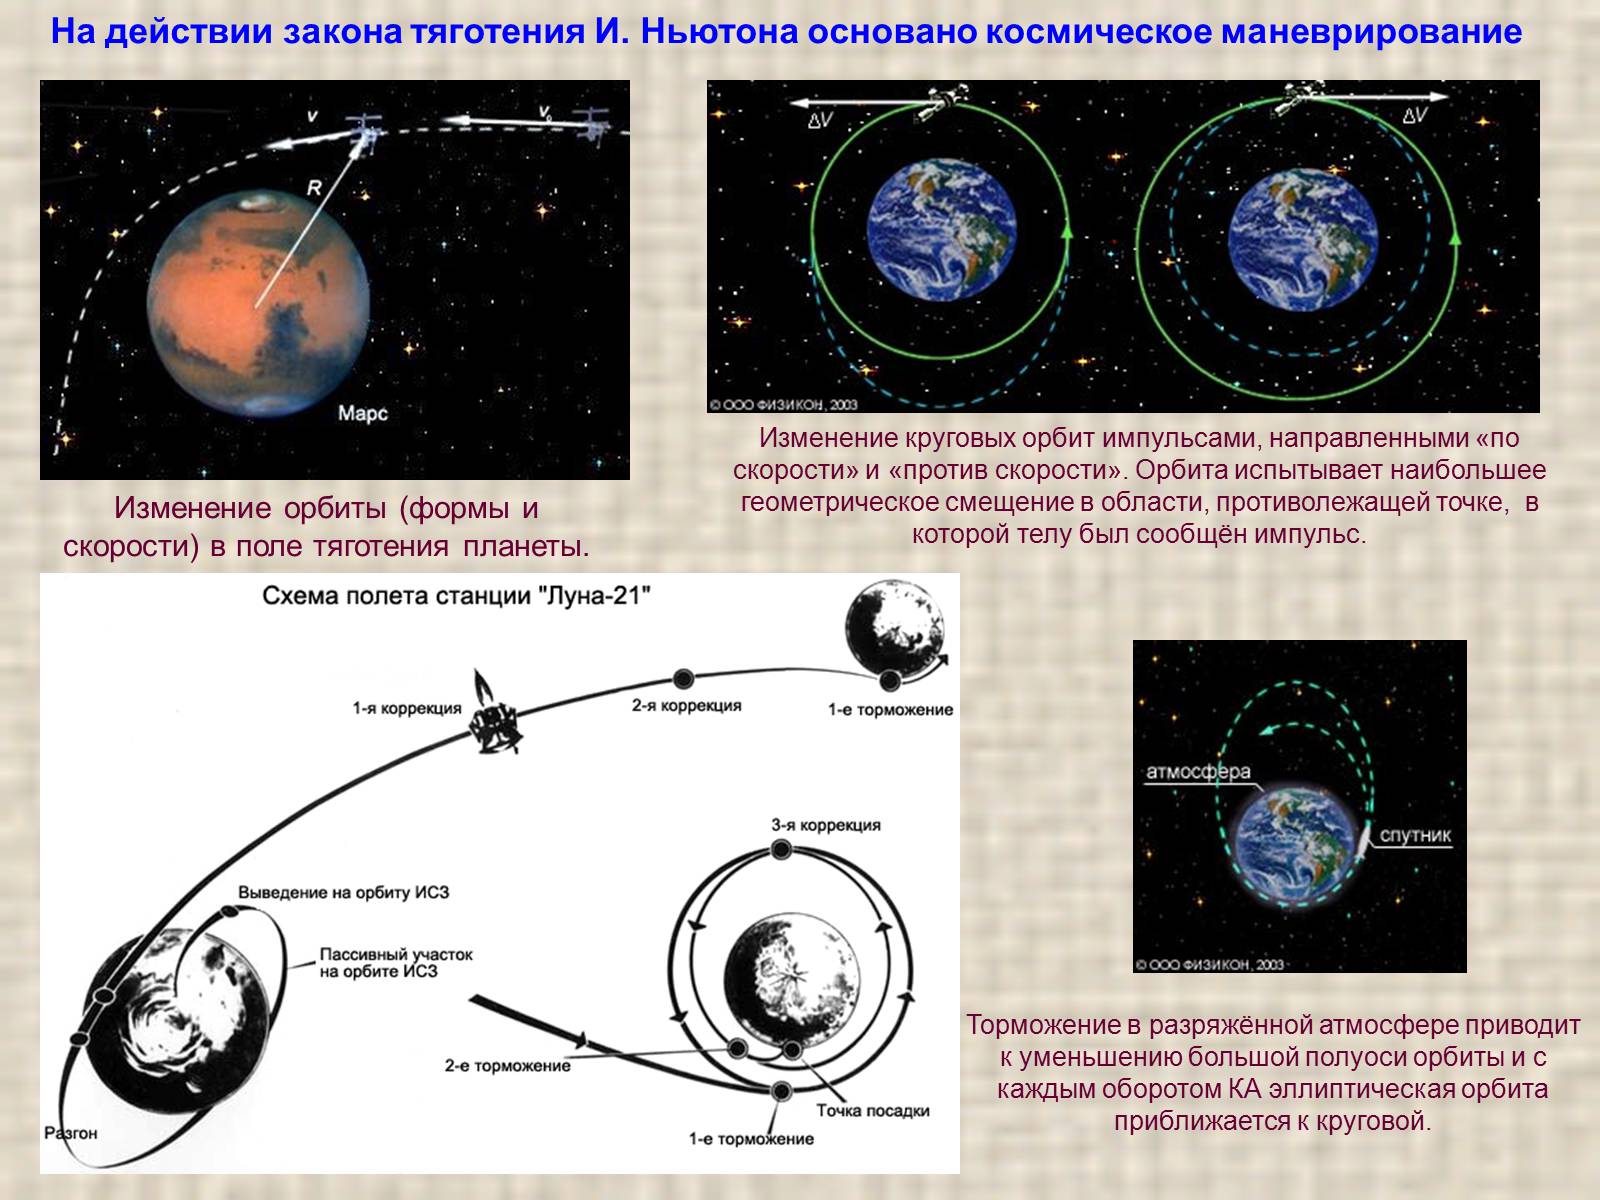 Спутник изменение орбиты. Обобщение Ньютоном законов Кеплера. Формы орбит и космически ескорости. Космические скорости и форма орбит. Обобщение и уточнение Ньютона и. Кеплера.